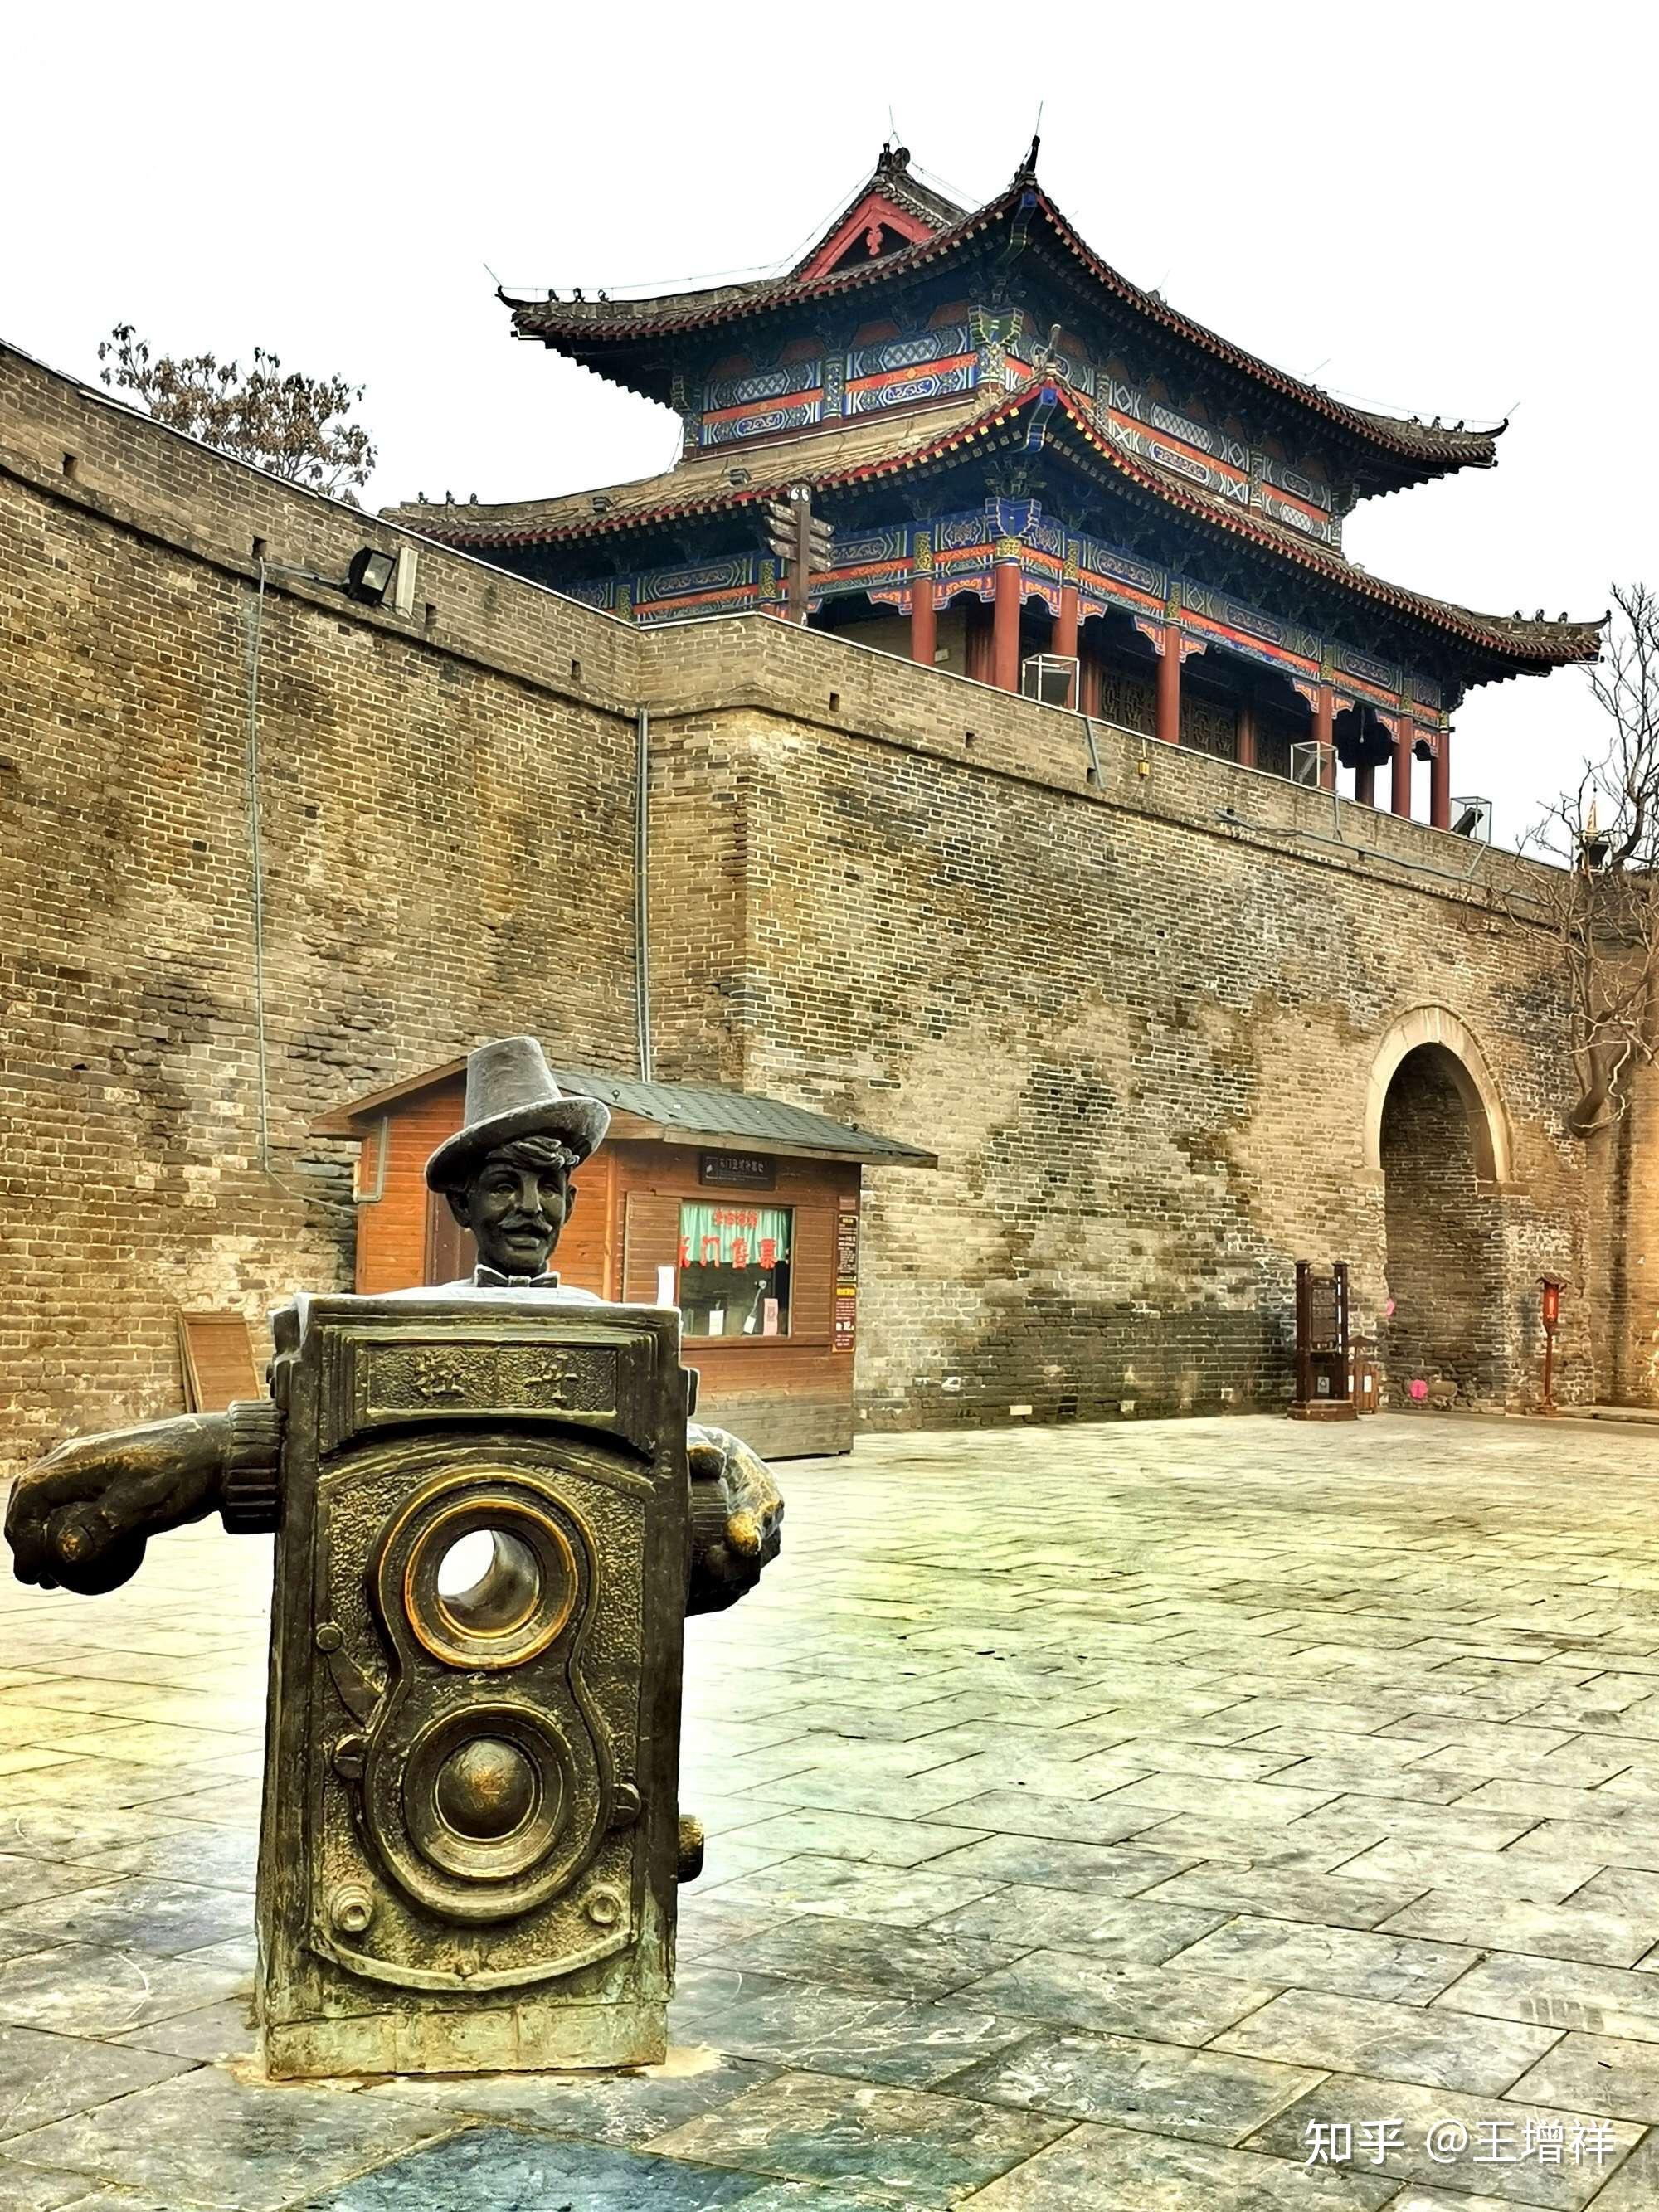 邯郸有哪些值得打卡的旅游景点?